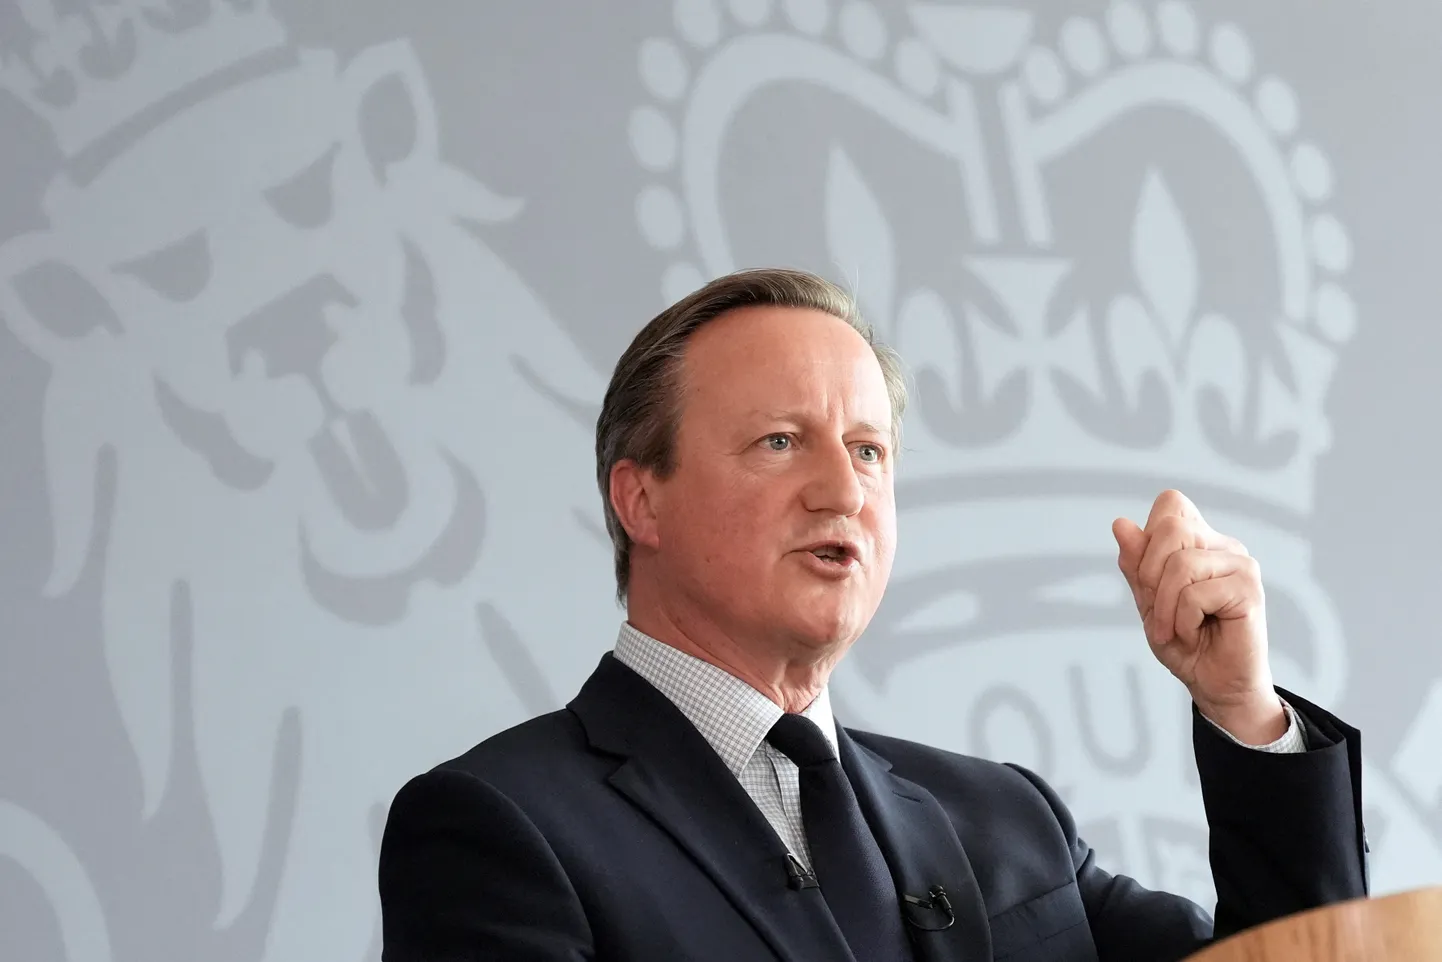 Briti välisminister David Cameron küberturbekeskuses kõnelemas.